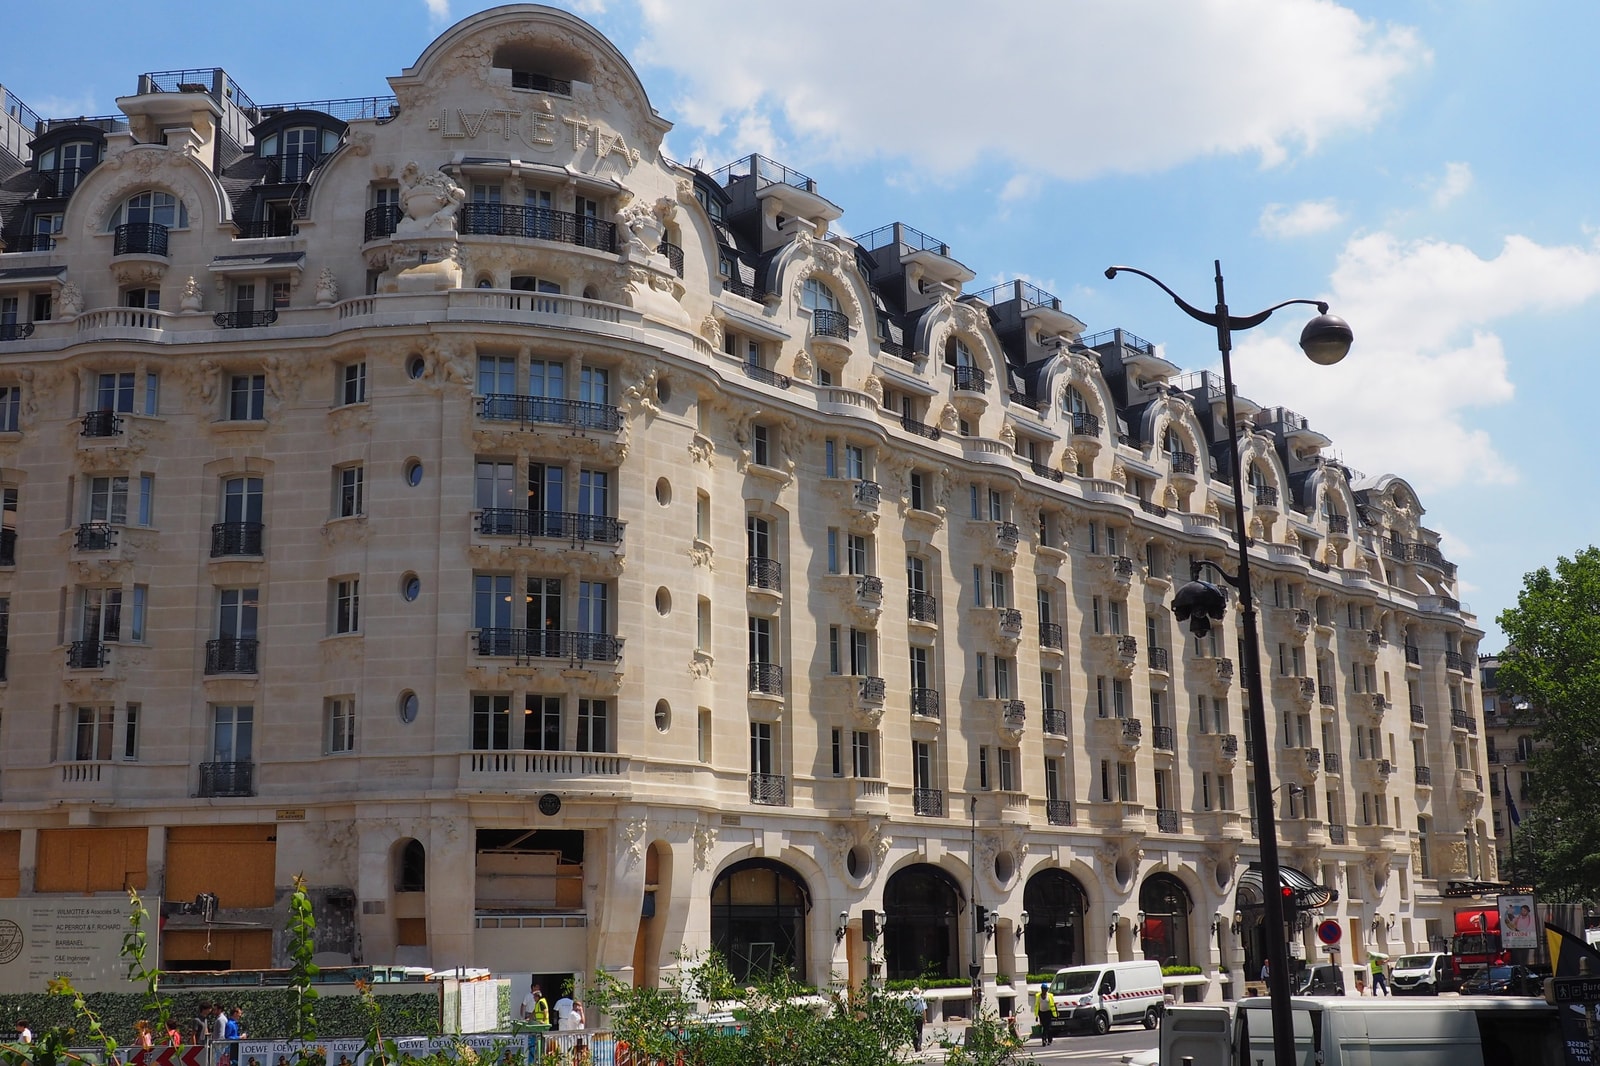 Hôtels luxe palace